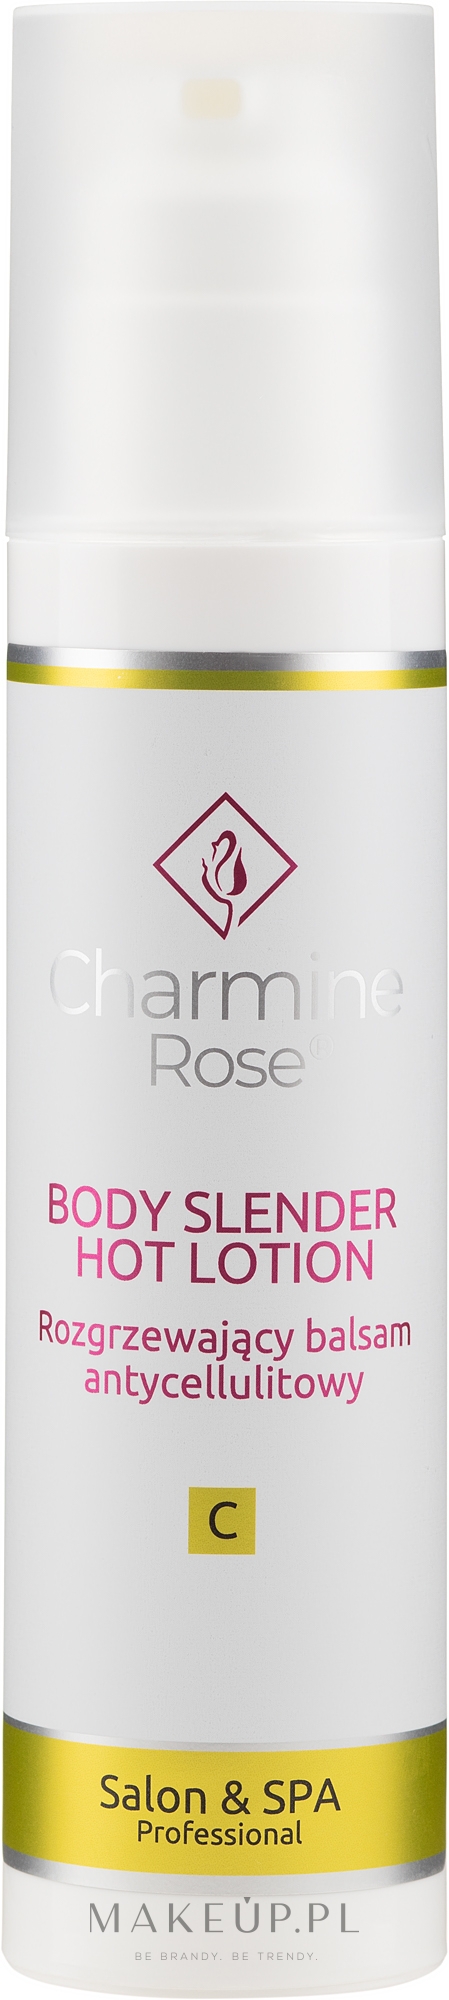 Rozgrzewający balsam antycellulitowy - Charmine Rose Body Slender Hot Lotion — Zdjęcie 200 ml